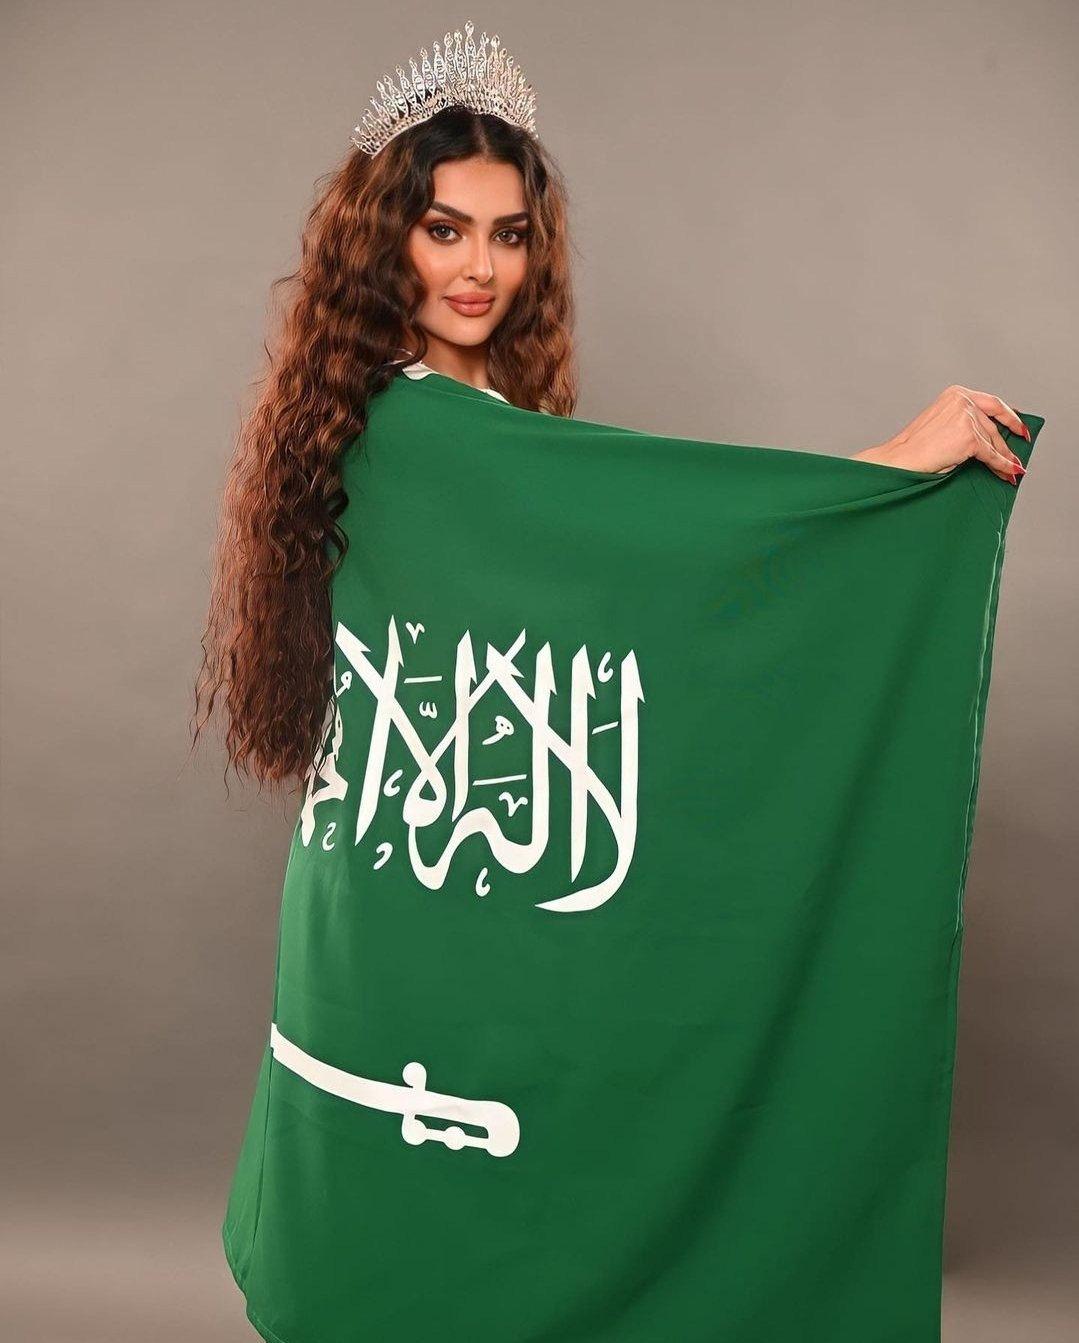 Suudi Arabistan, ilk kez güzellik yarışmasına katıldı